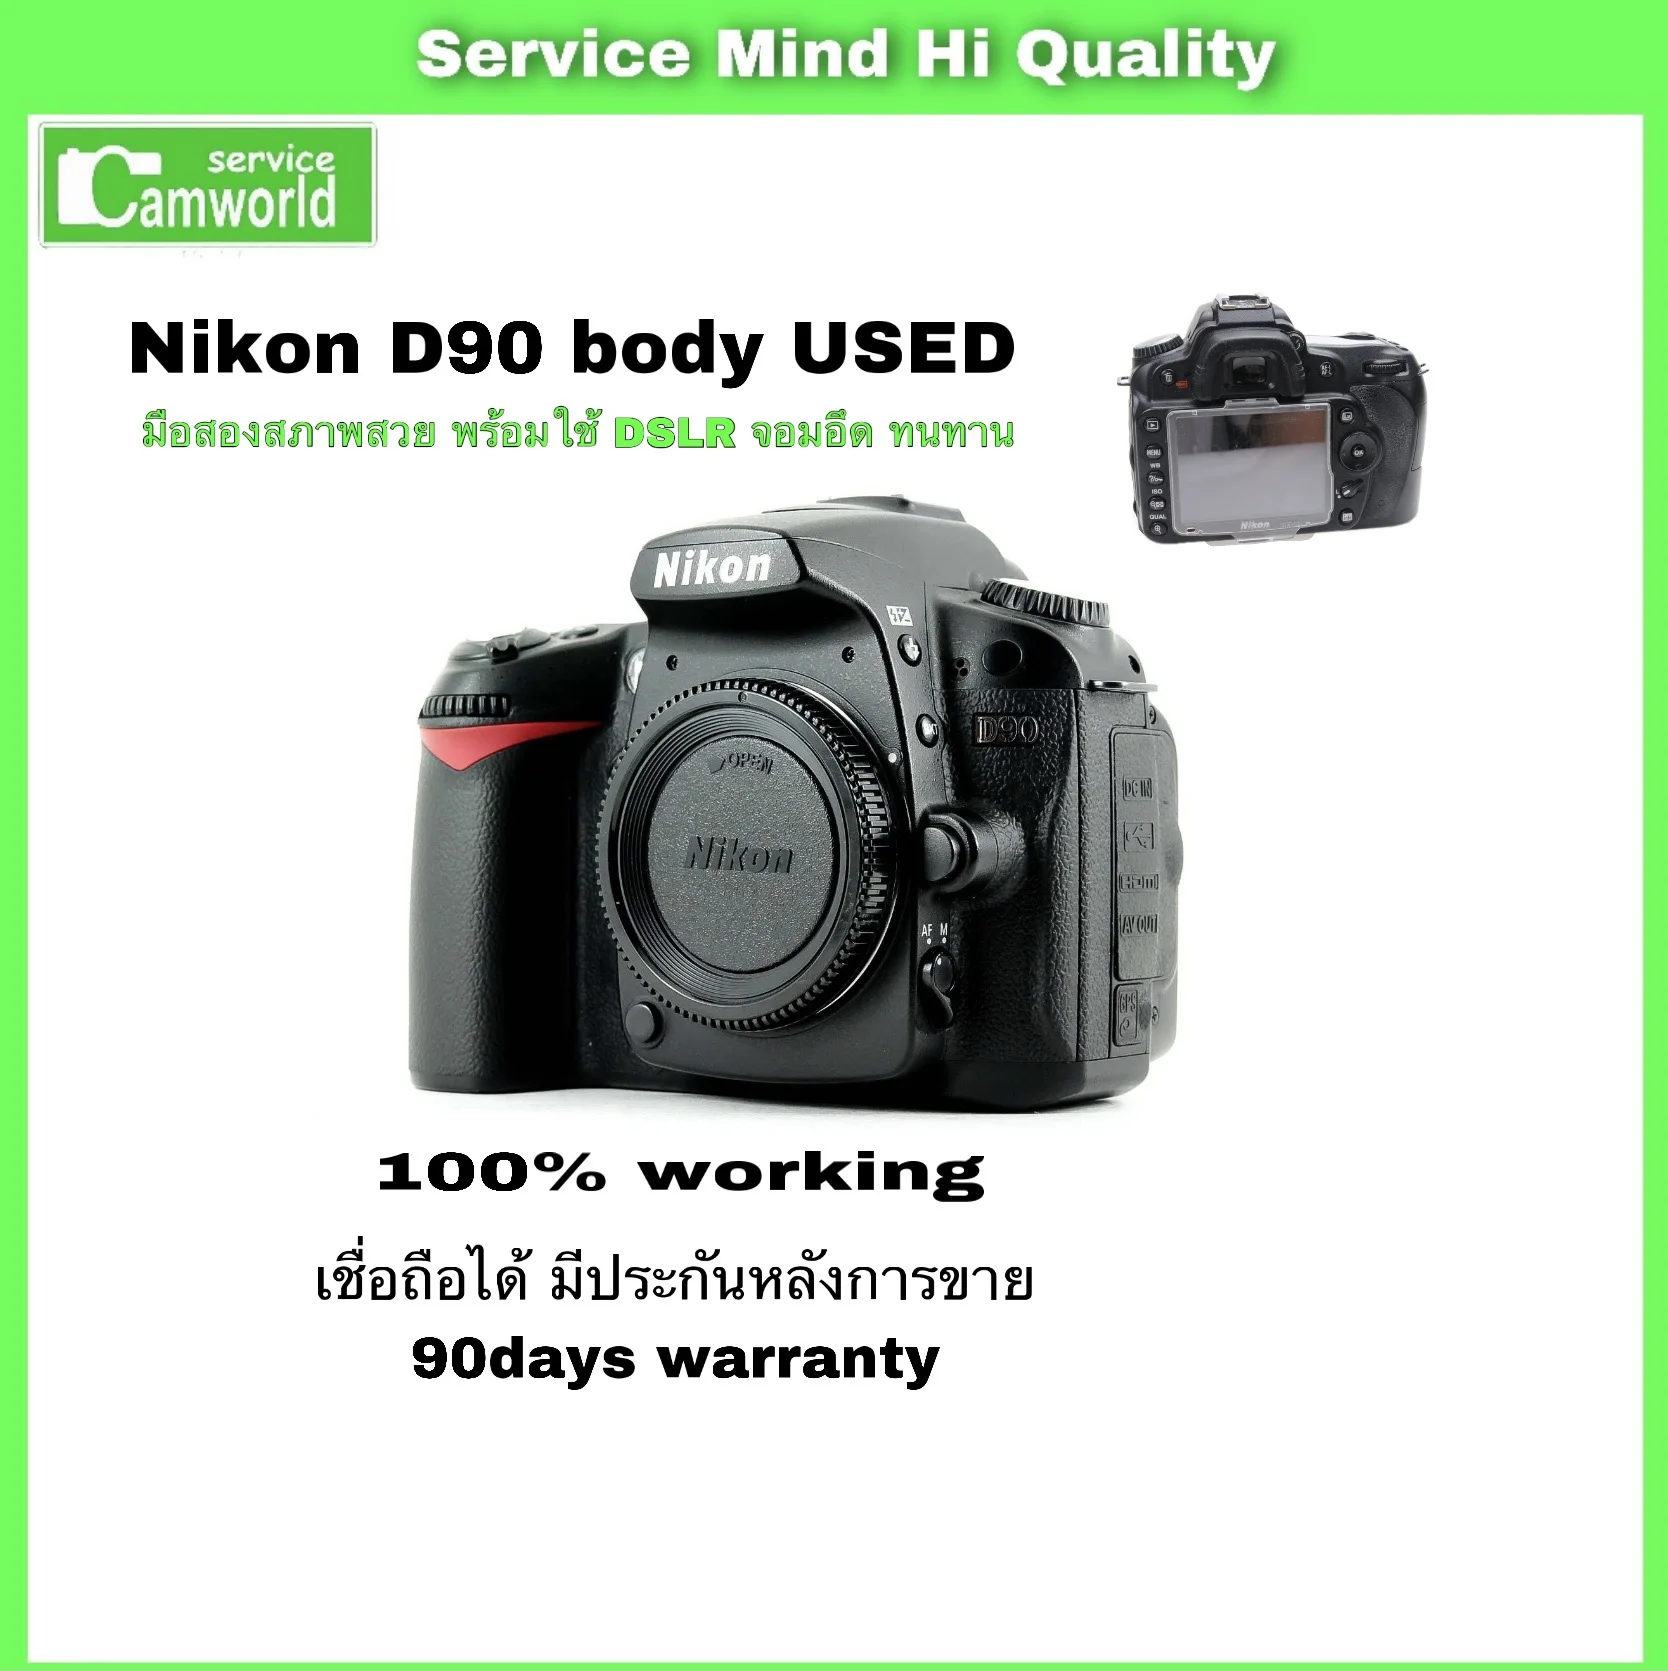 Nikon D90 มือสอง used body กล้องDSLR จอมอึดทนทาน อุปกรณ์ครบพร้อมใช้ มีประกันหลังการขาย90days